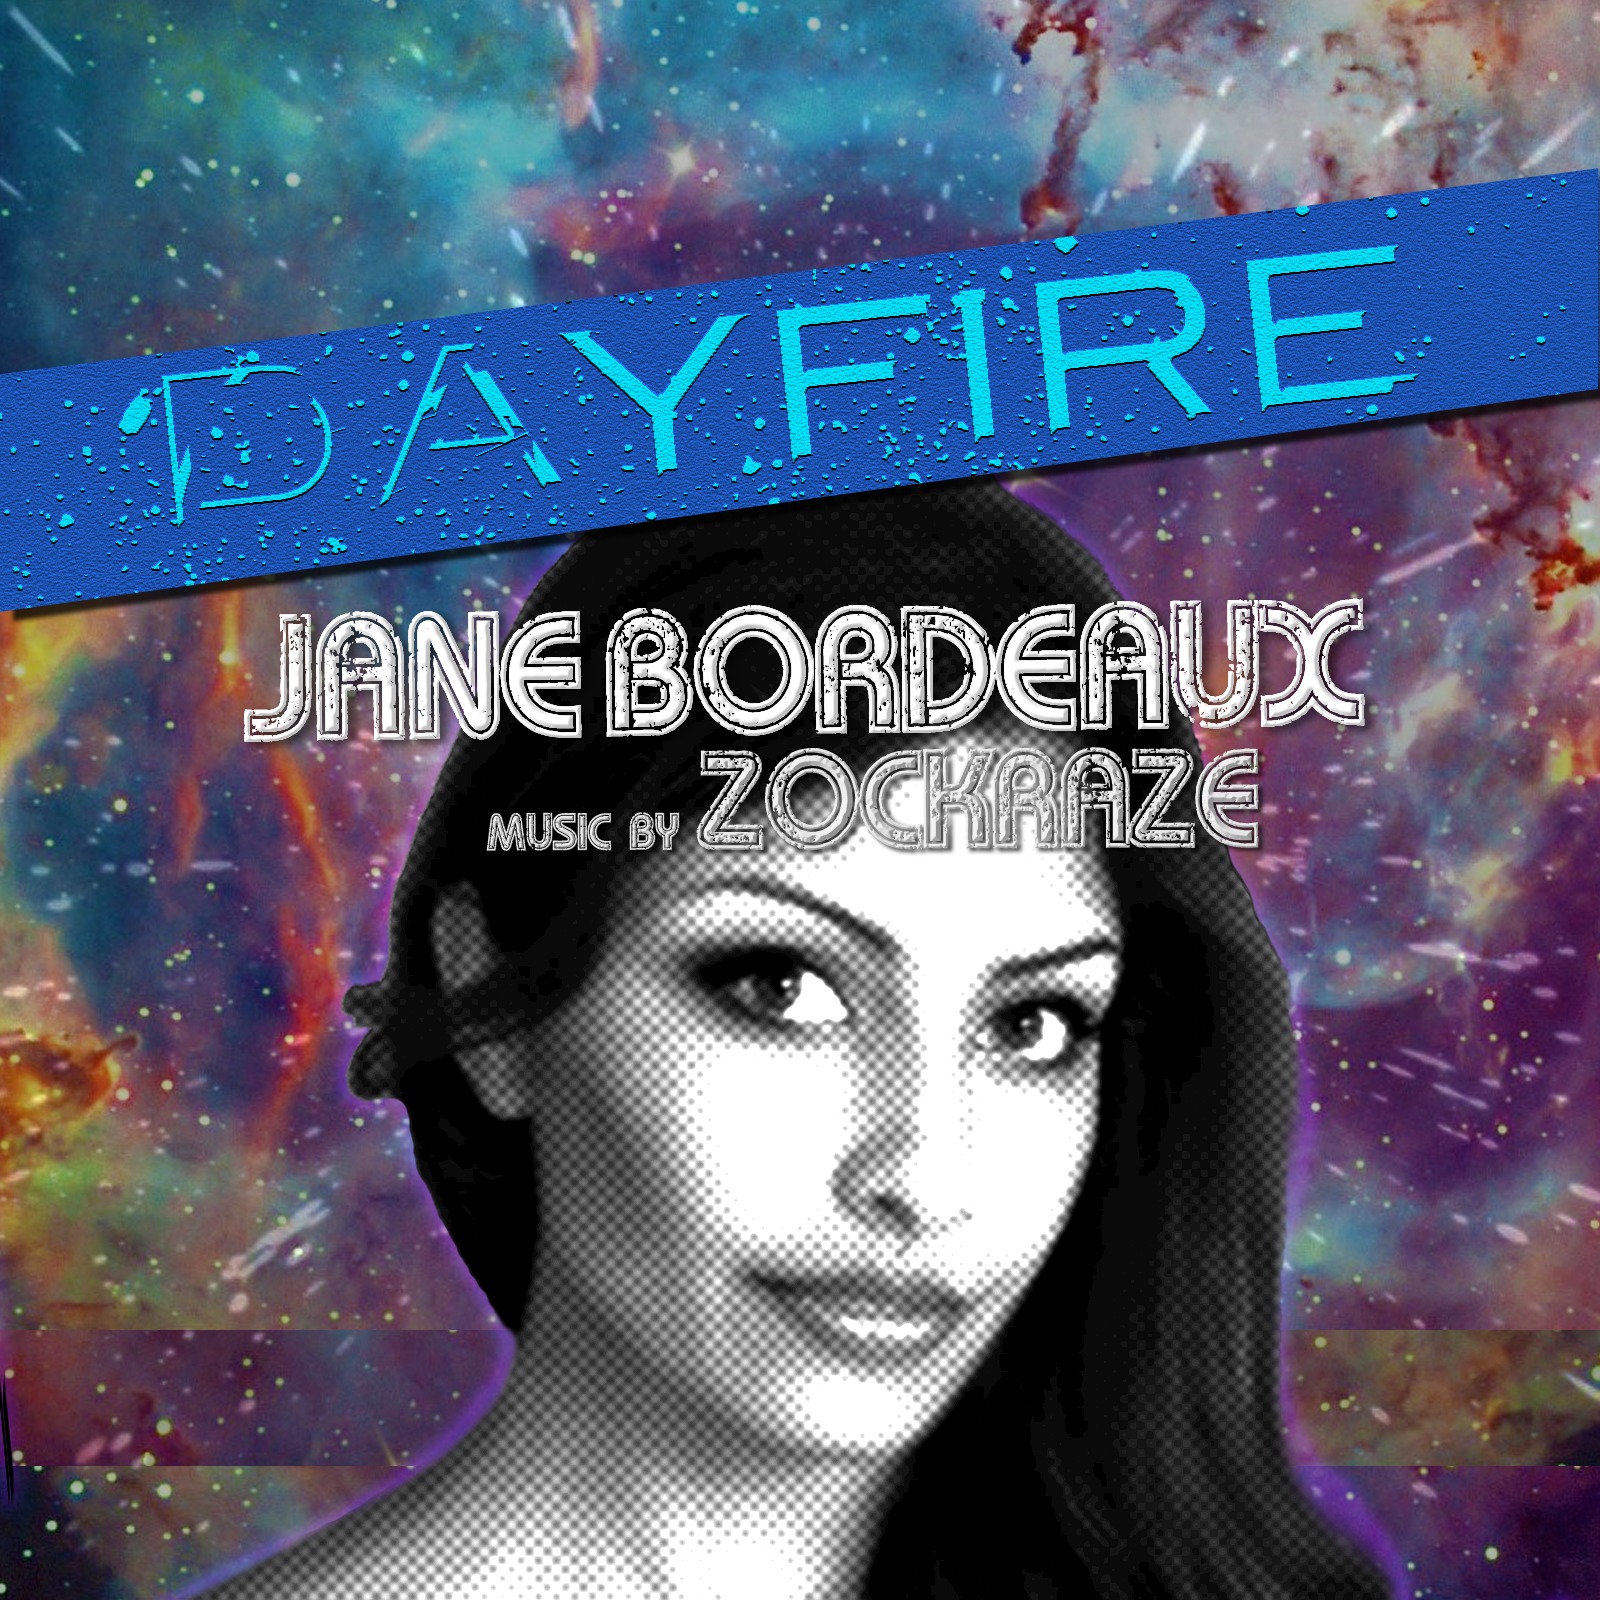 DAYFIRE By Jane Bordeaux Feat. Music By ZockRaZe